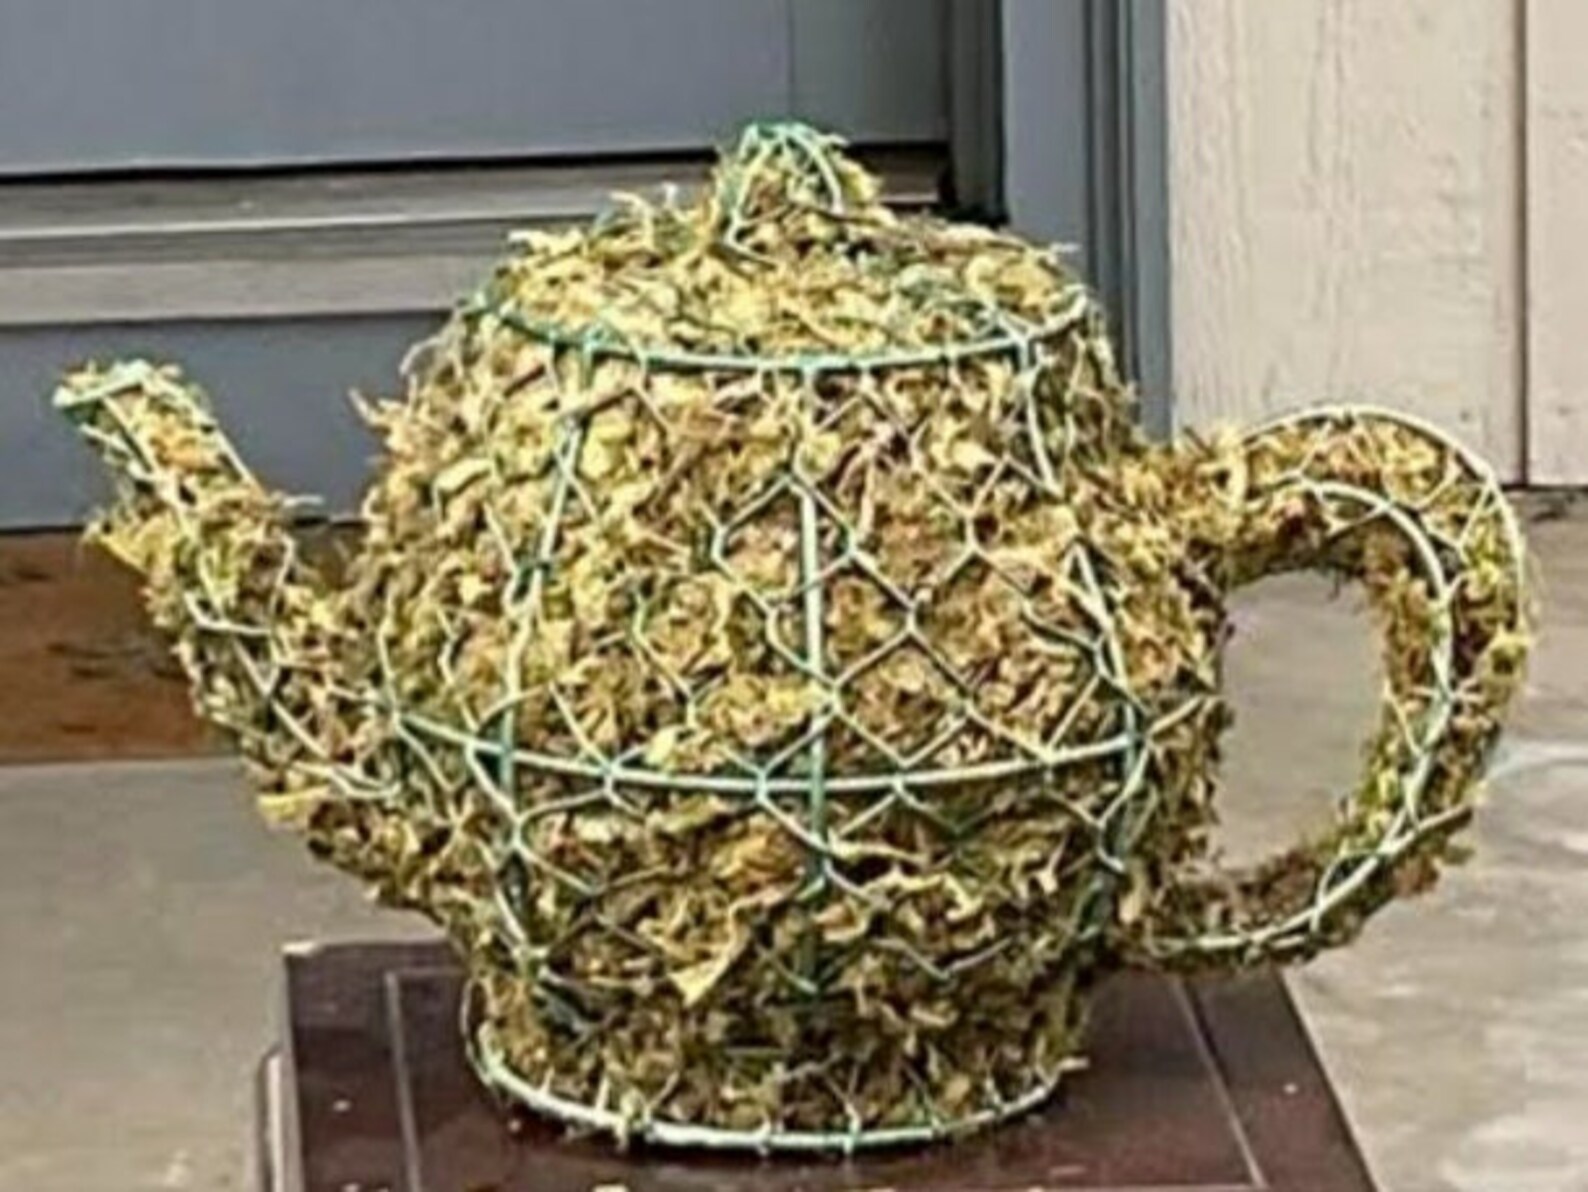 Moss Tea Pot